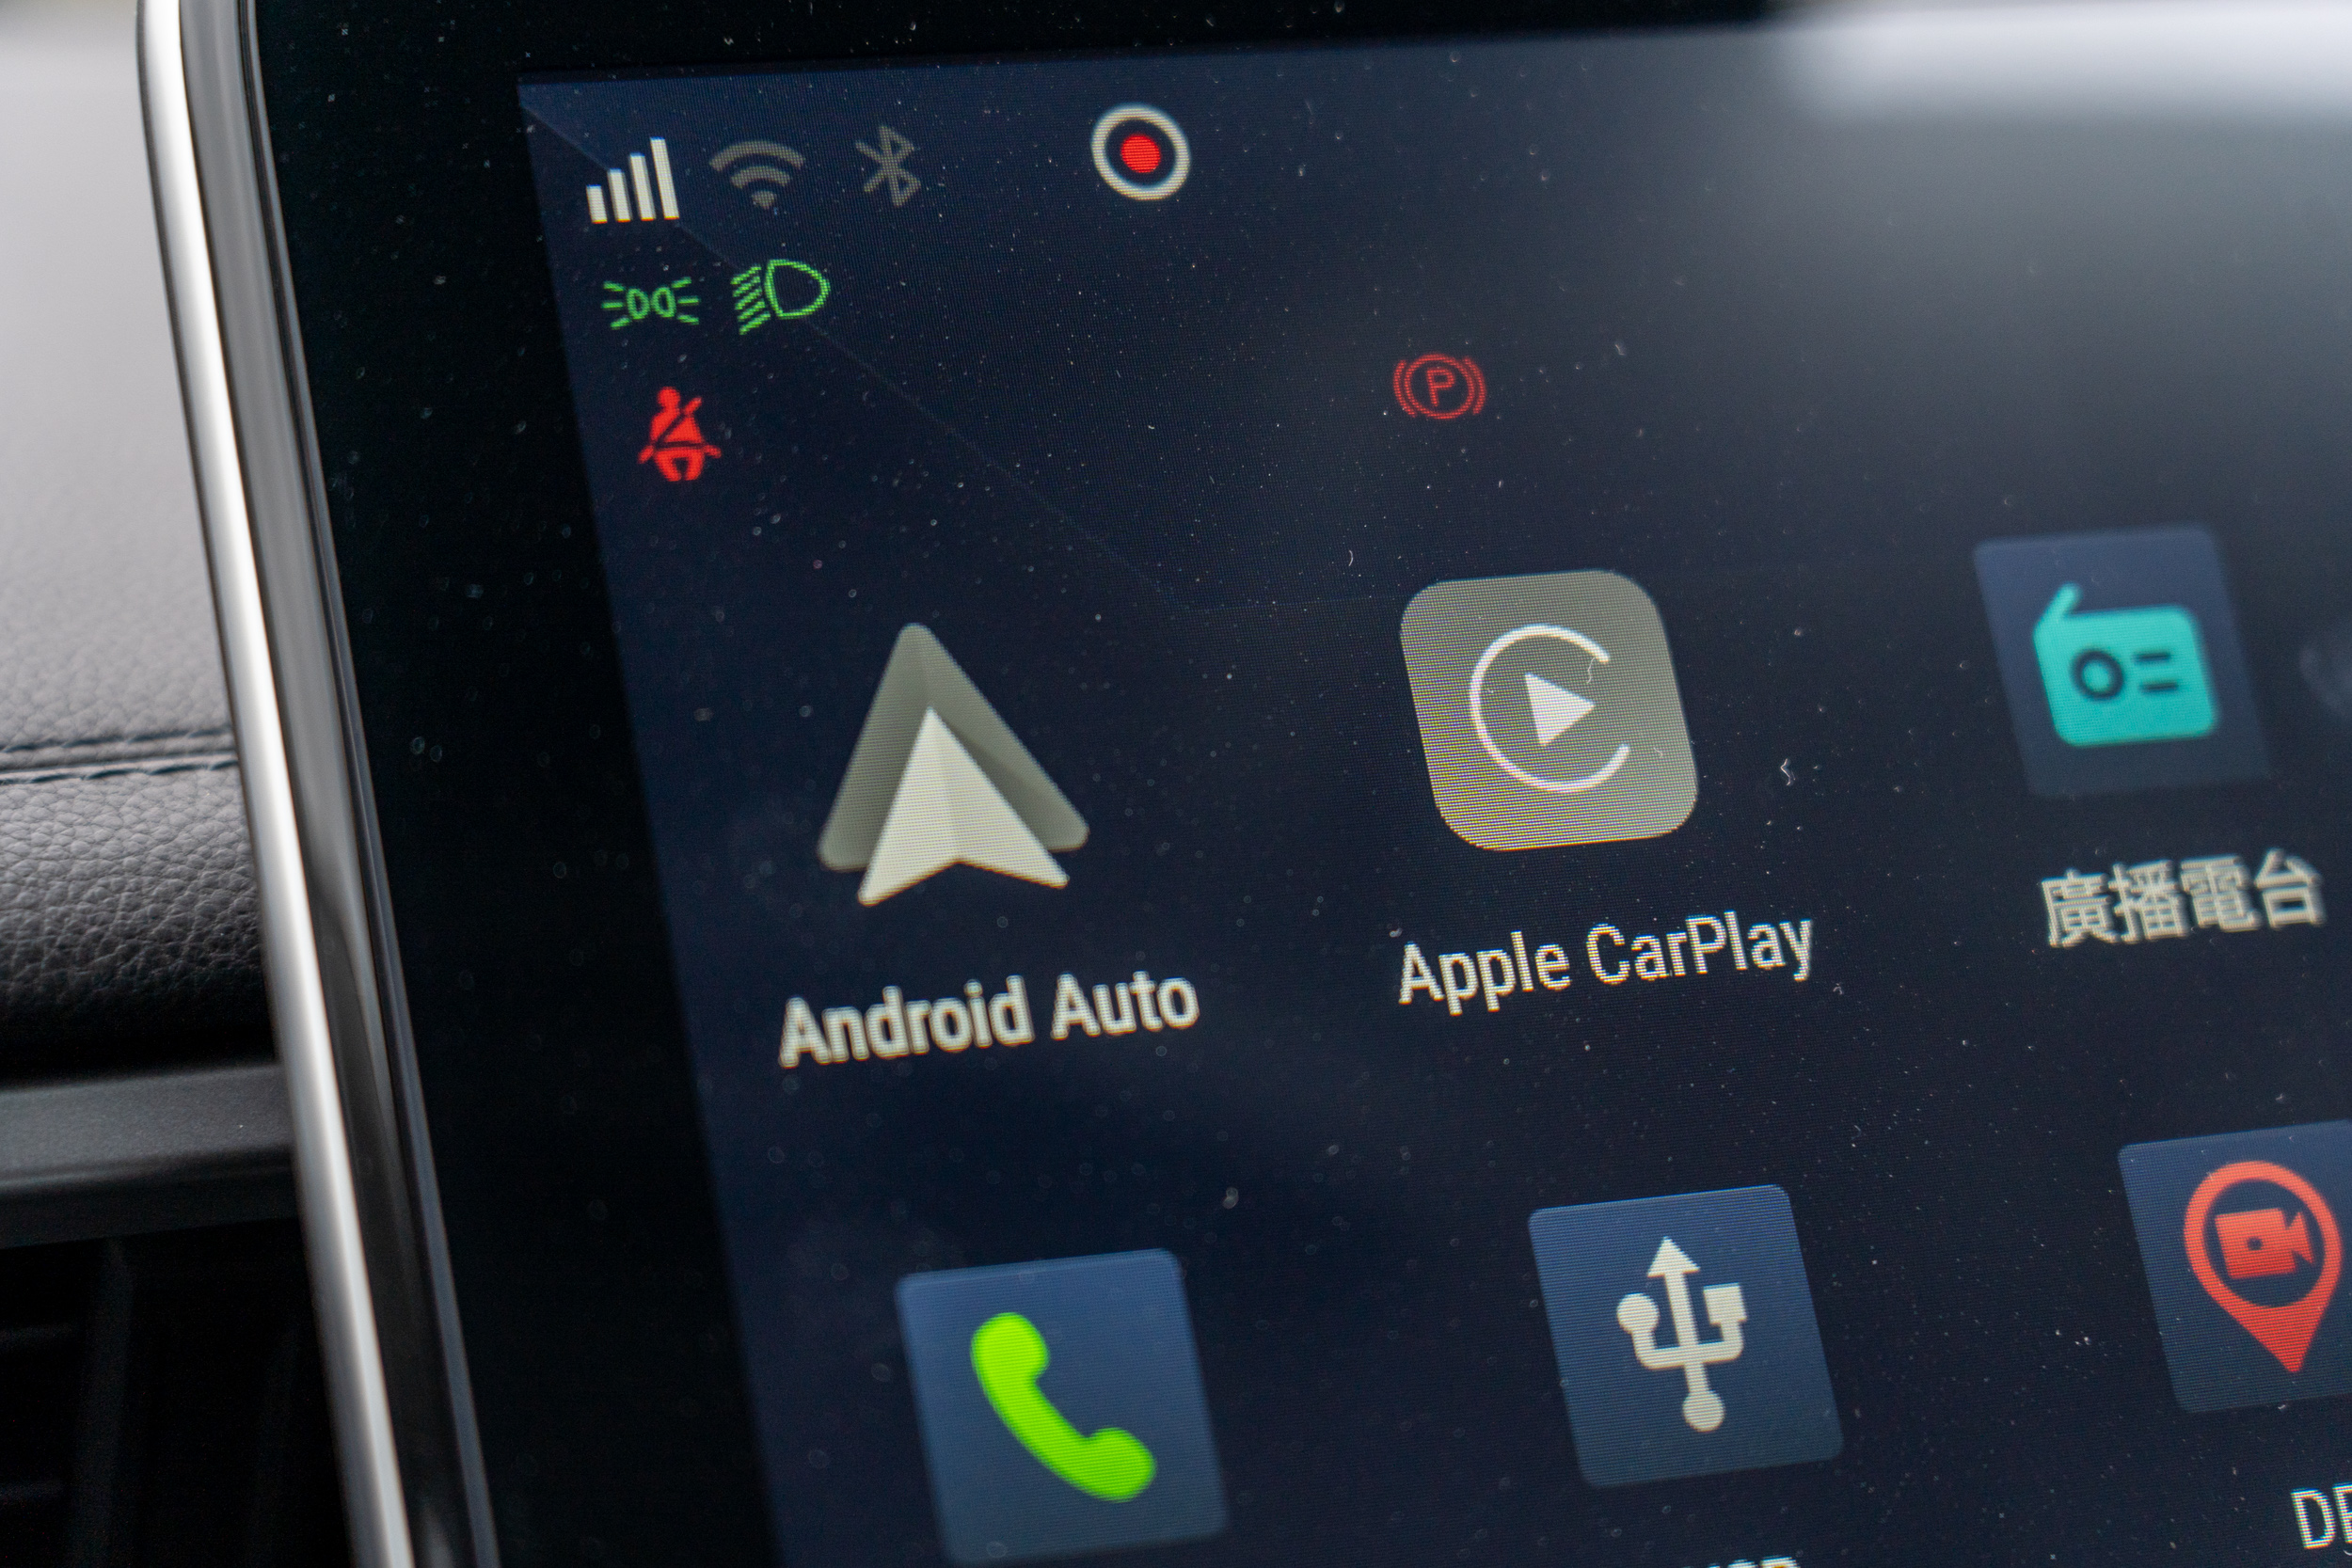 Apple CarPlay 與 Android Auto 的搭載完善了整體數位化體驗。